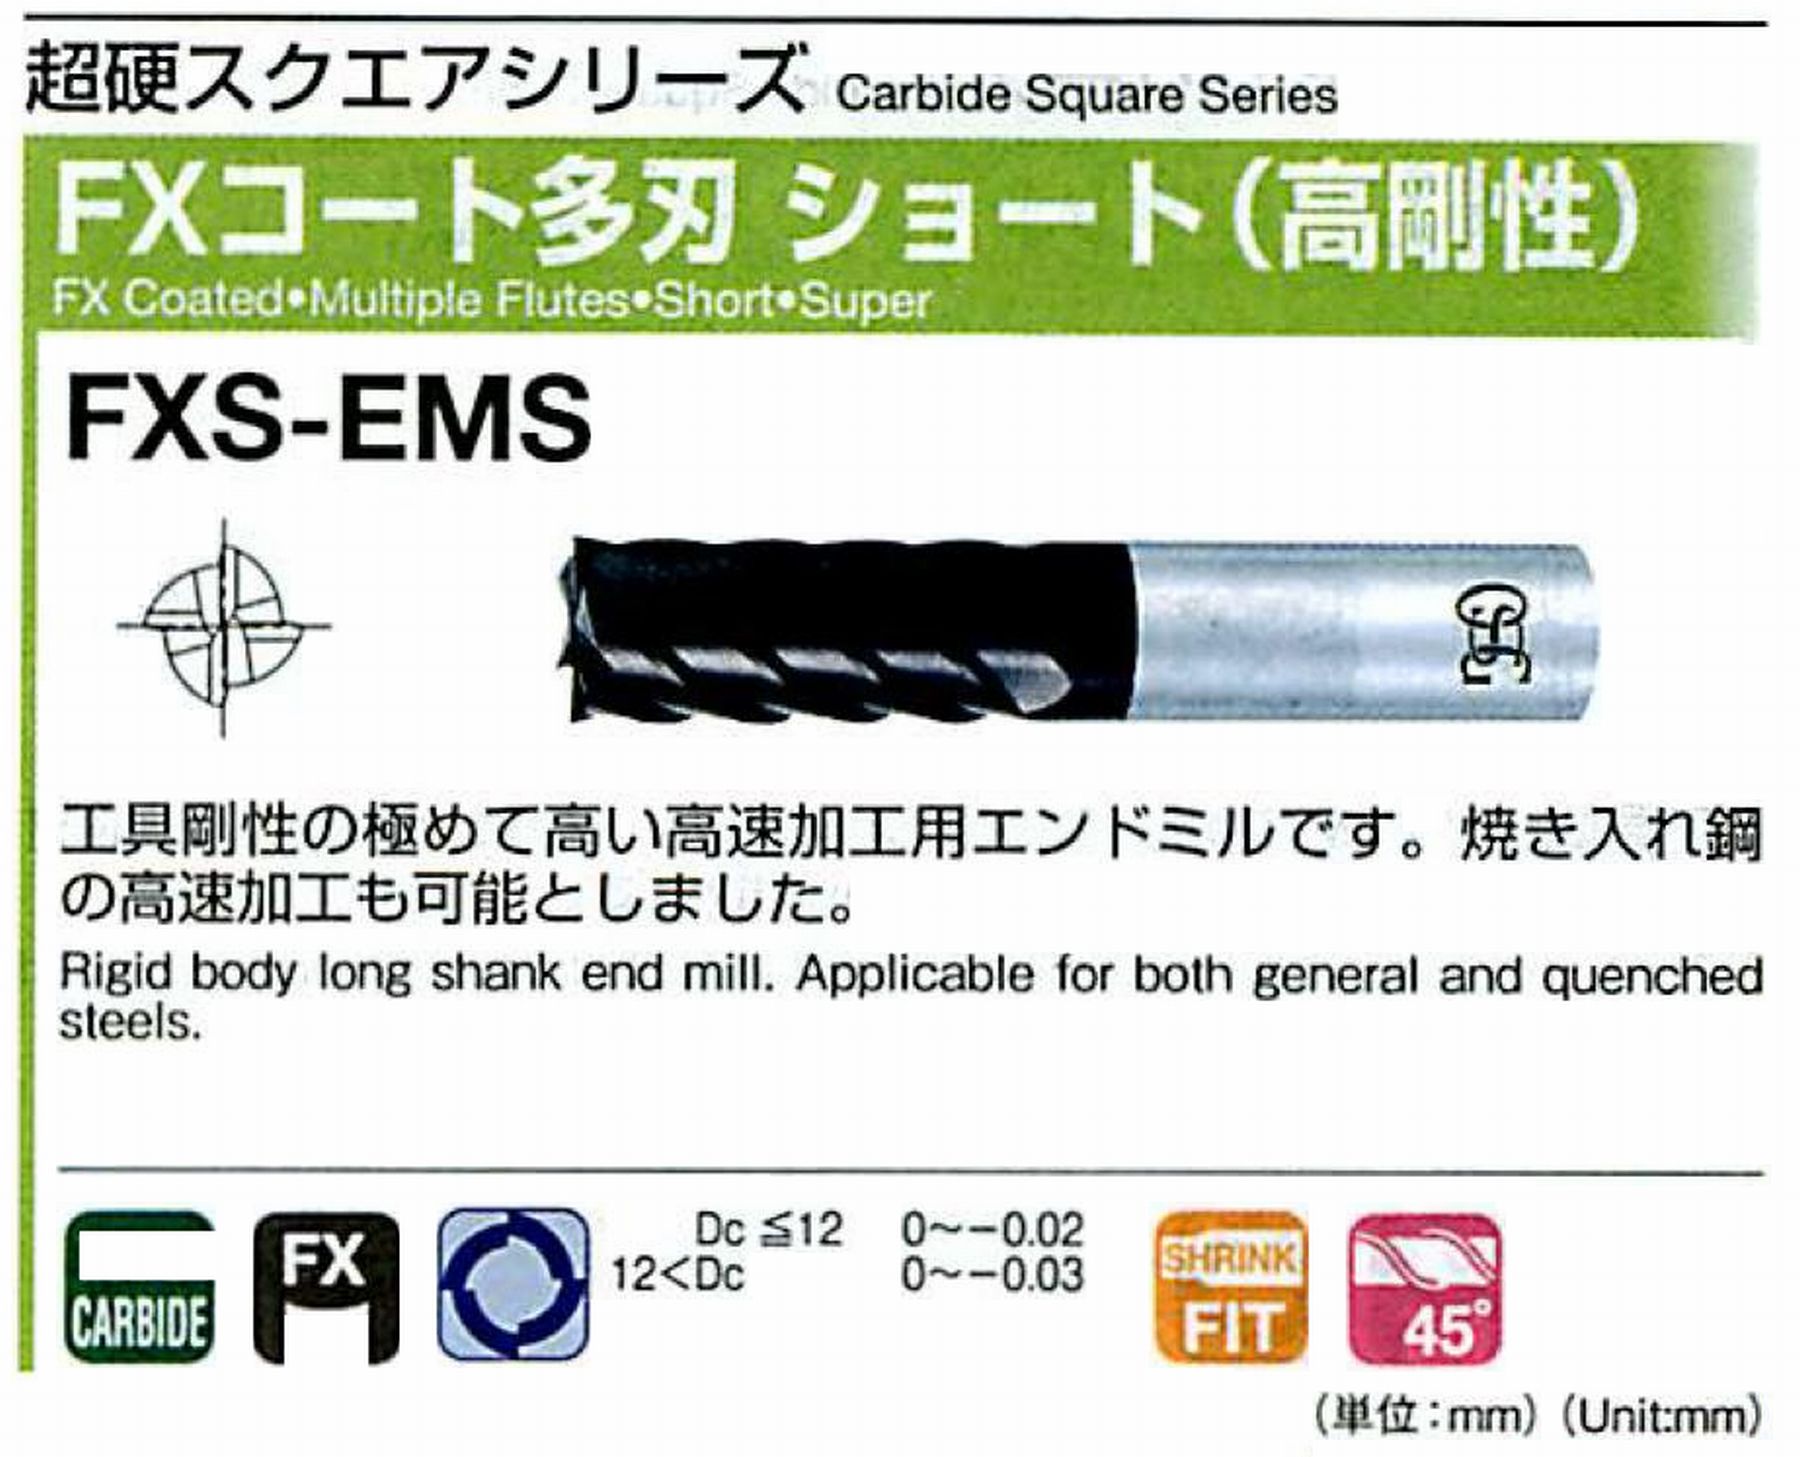 オーエスジー/OSG FXコート 多刃ショート(高剛性) FXS-EMS 外径6 全長60 刃長15 シャンク径6mm 刃数6